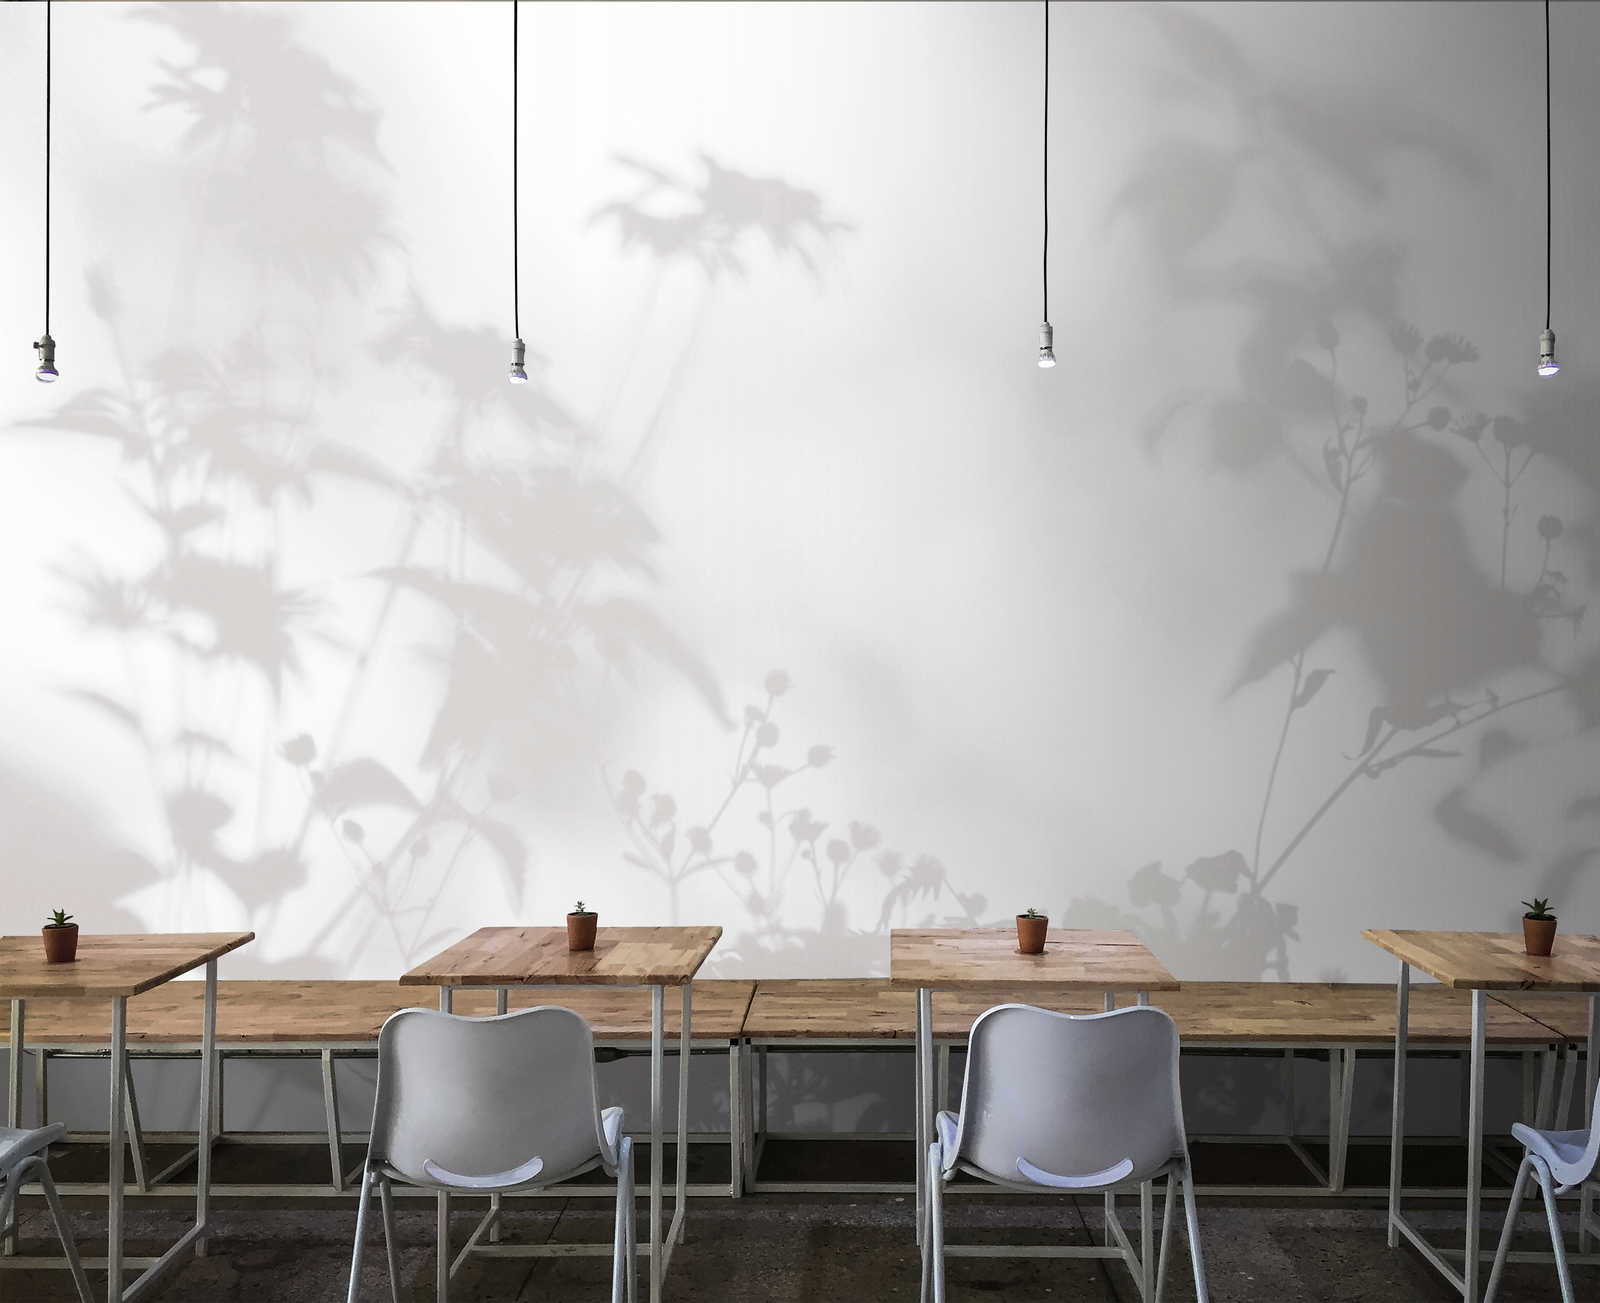             Shadow Room 2 - Papier peint nature gris et blanc, design délavé
        